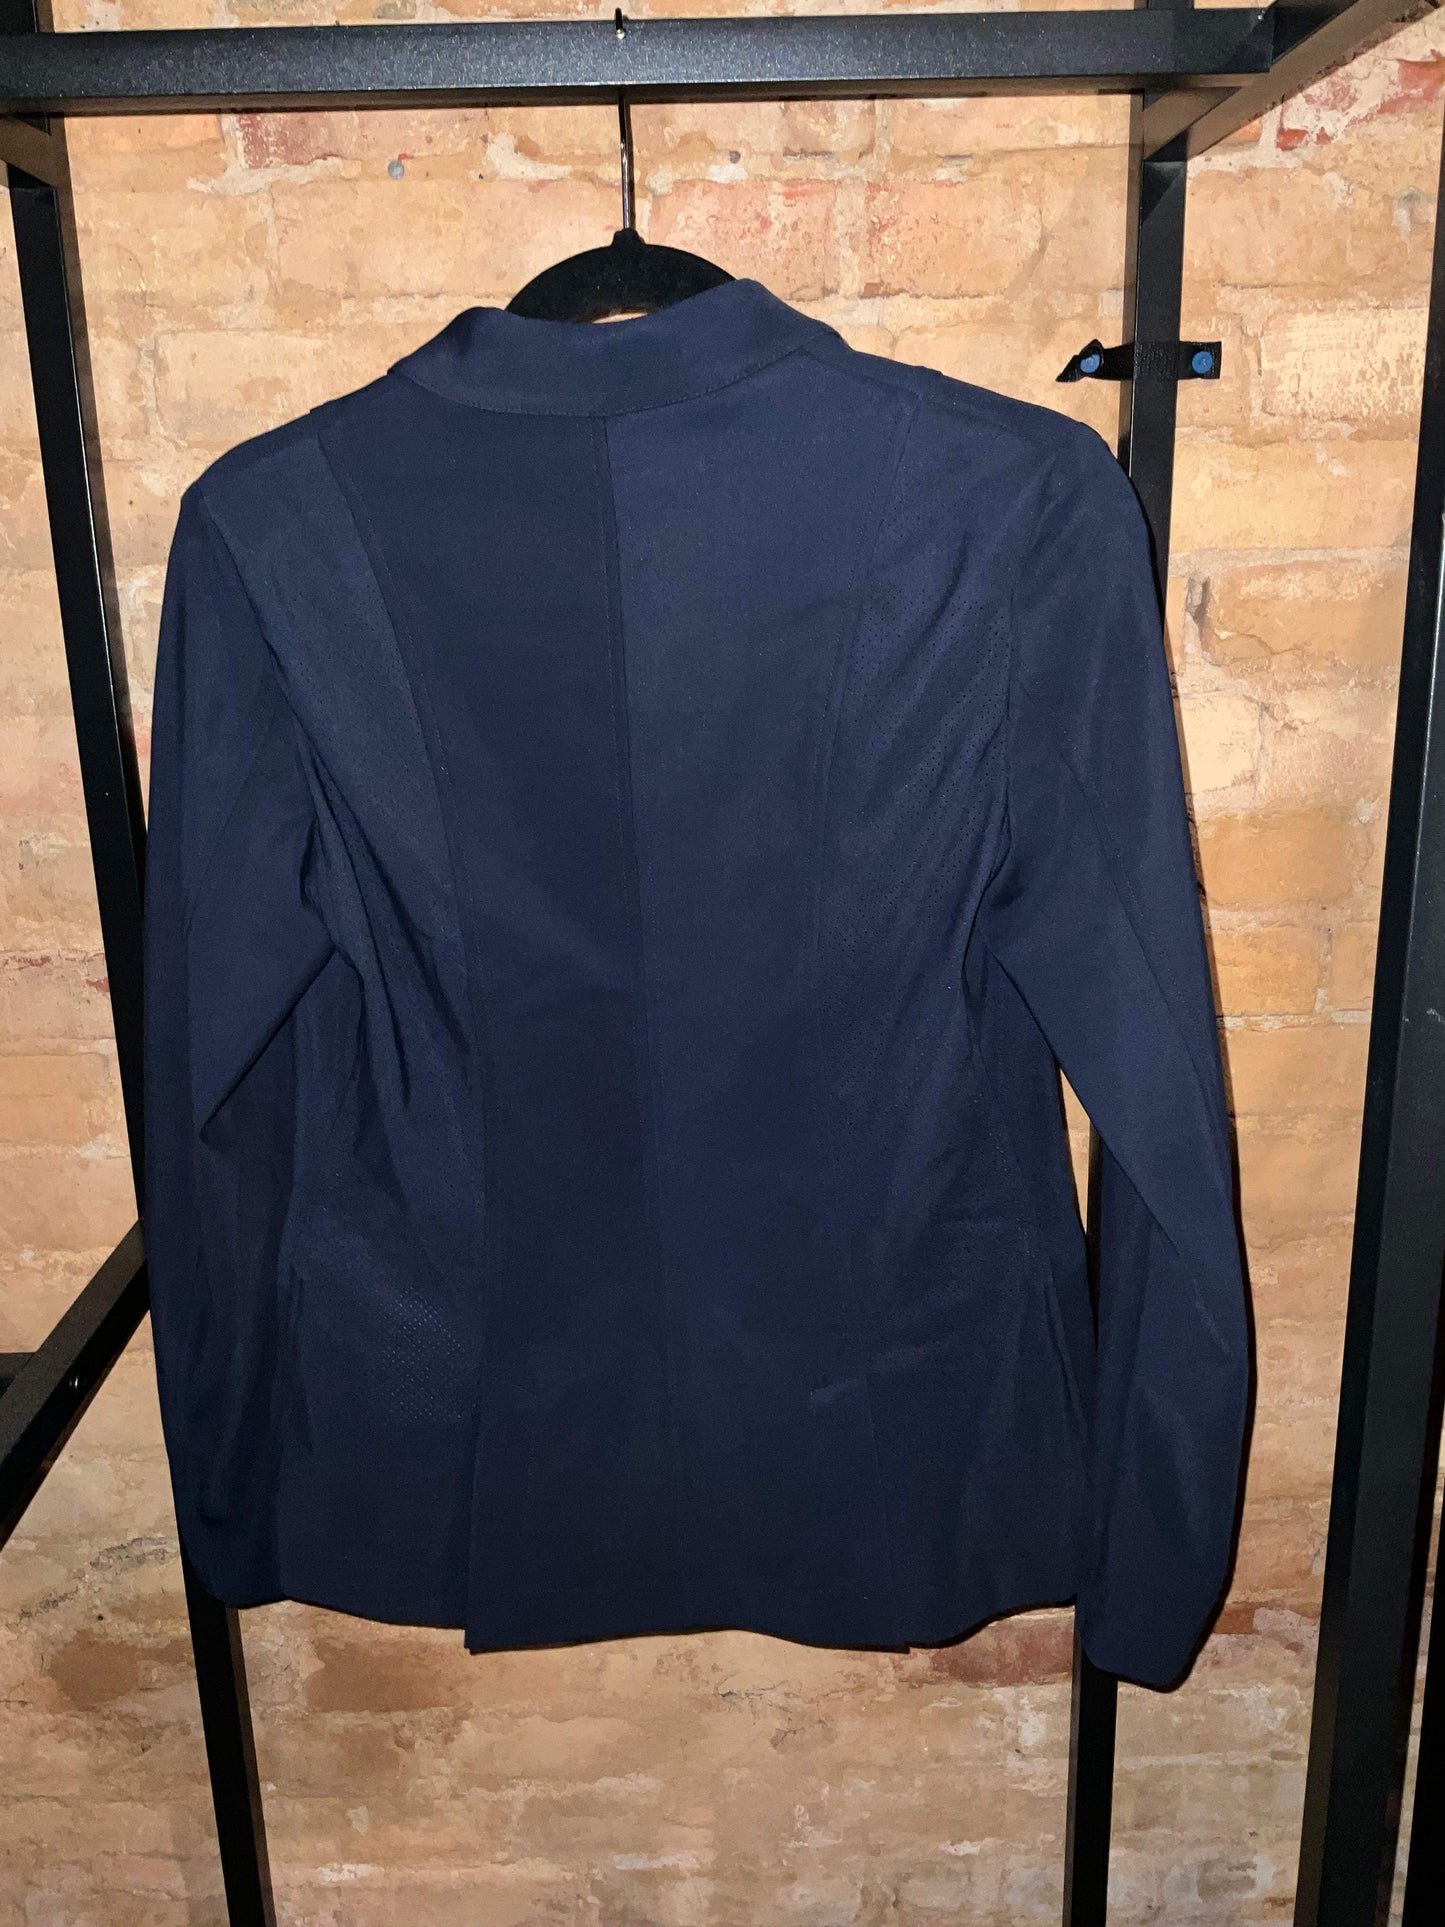 Equiline Air Vest Compatible Show Coat Size 40 IT